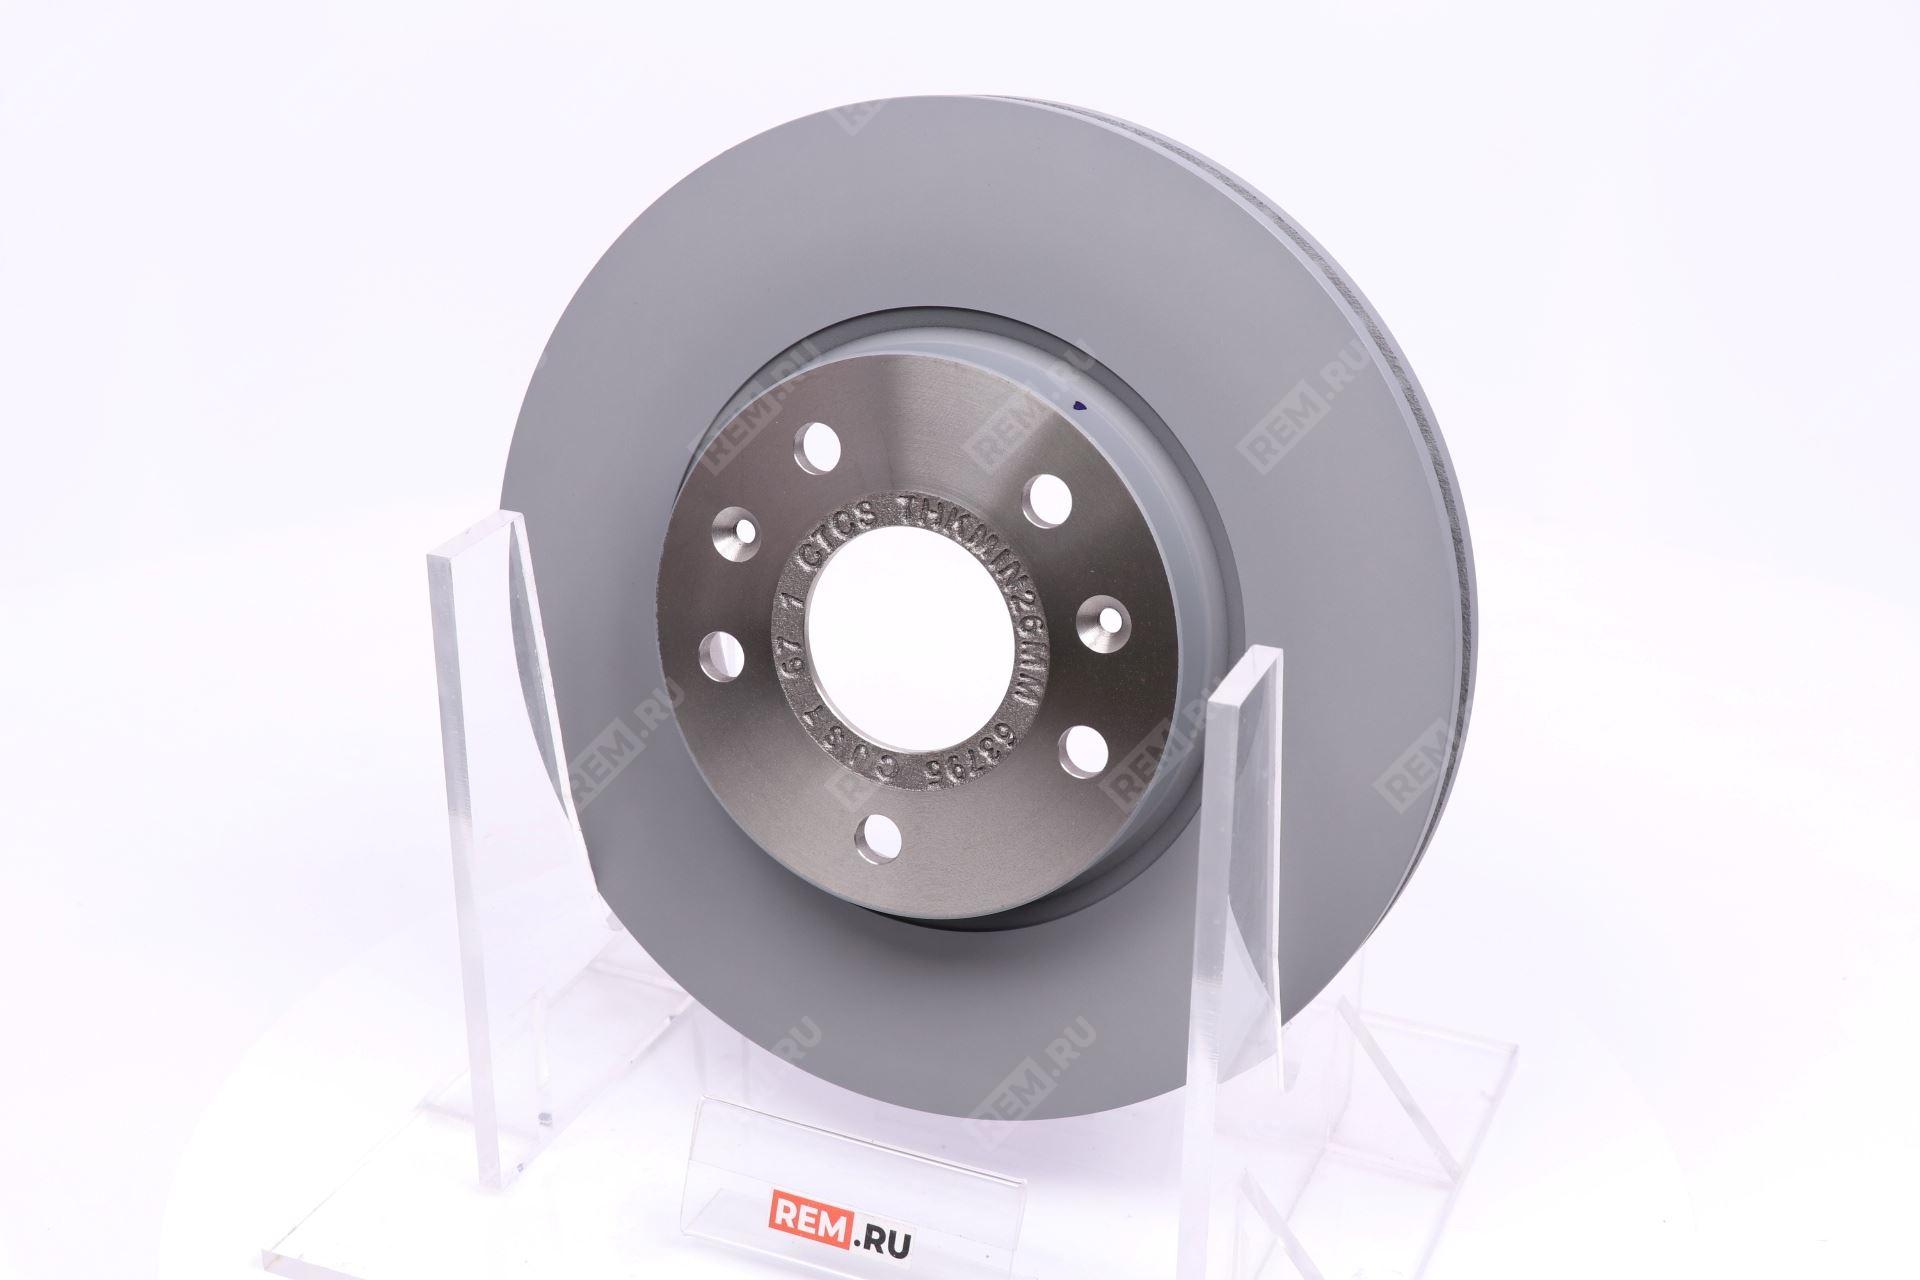  S201056-0600 диск тормозной передний